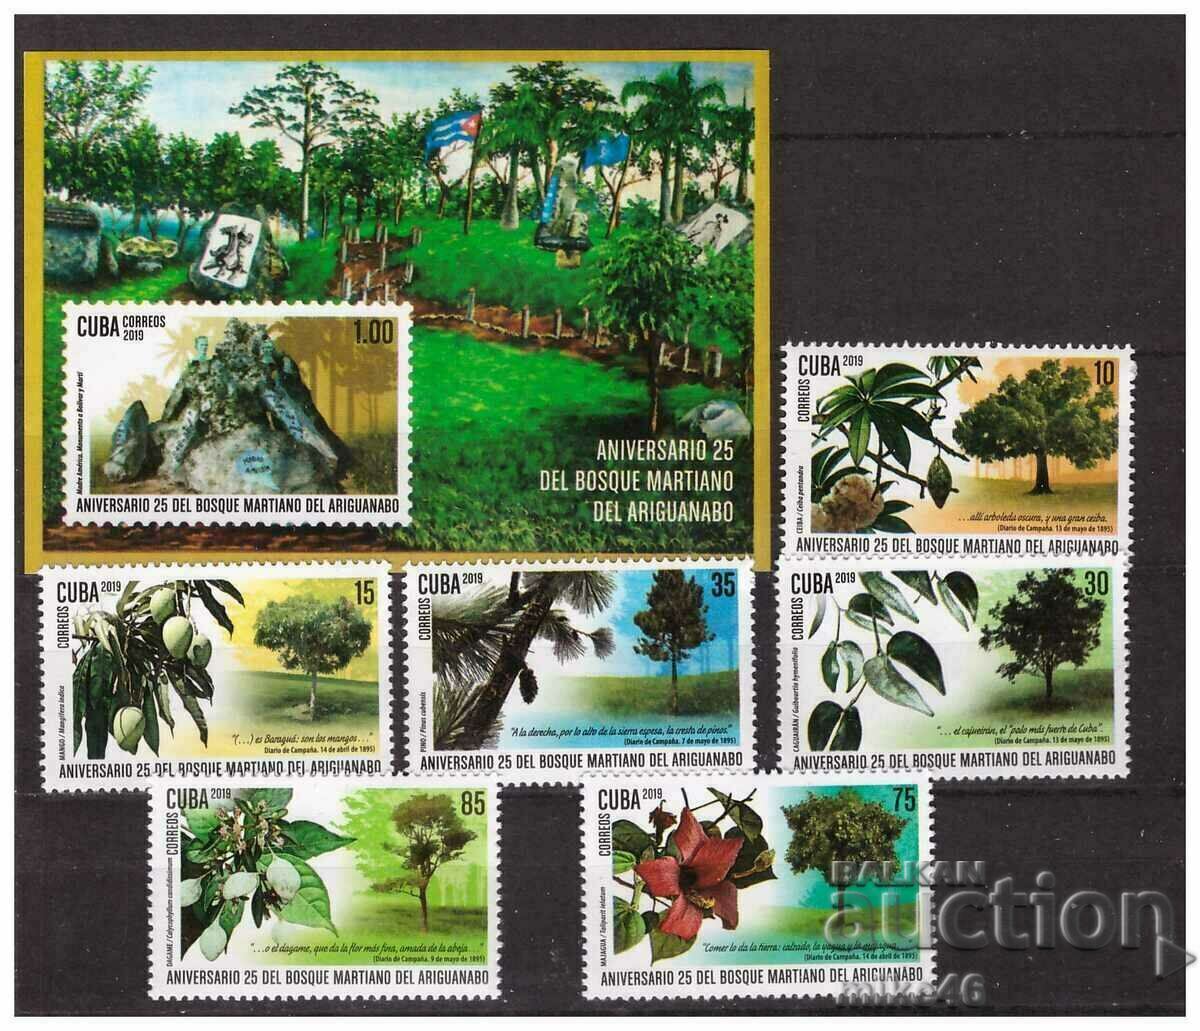 CUBA 2019 TREES καθαρή σειρά και μπλοκ